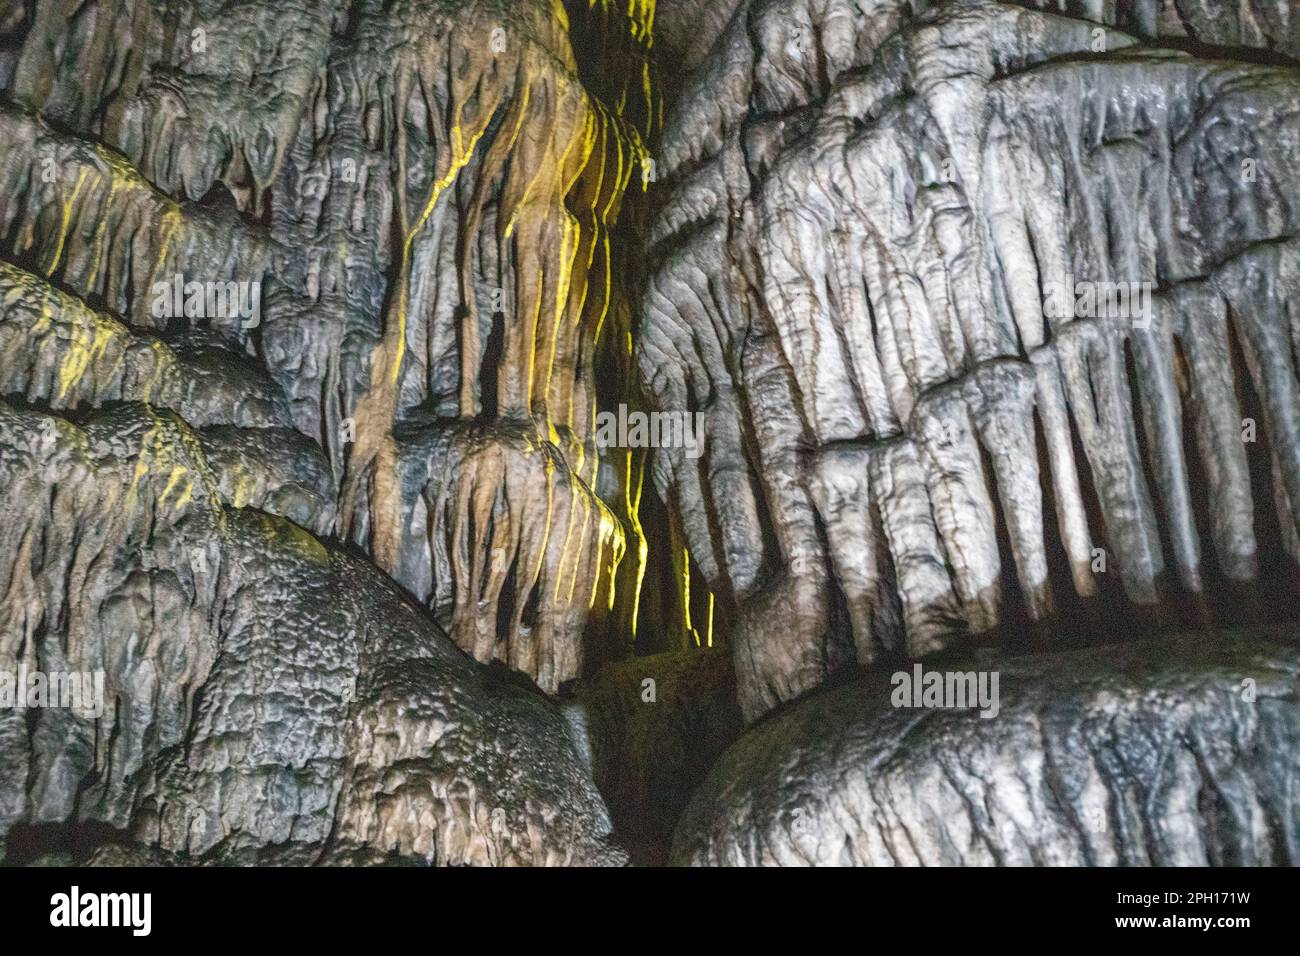 Grotte stalactite en Crète, lieu de naissance de Zeus. Photo de haute qualité. Banque D'Images